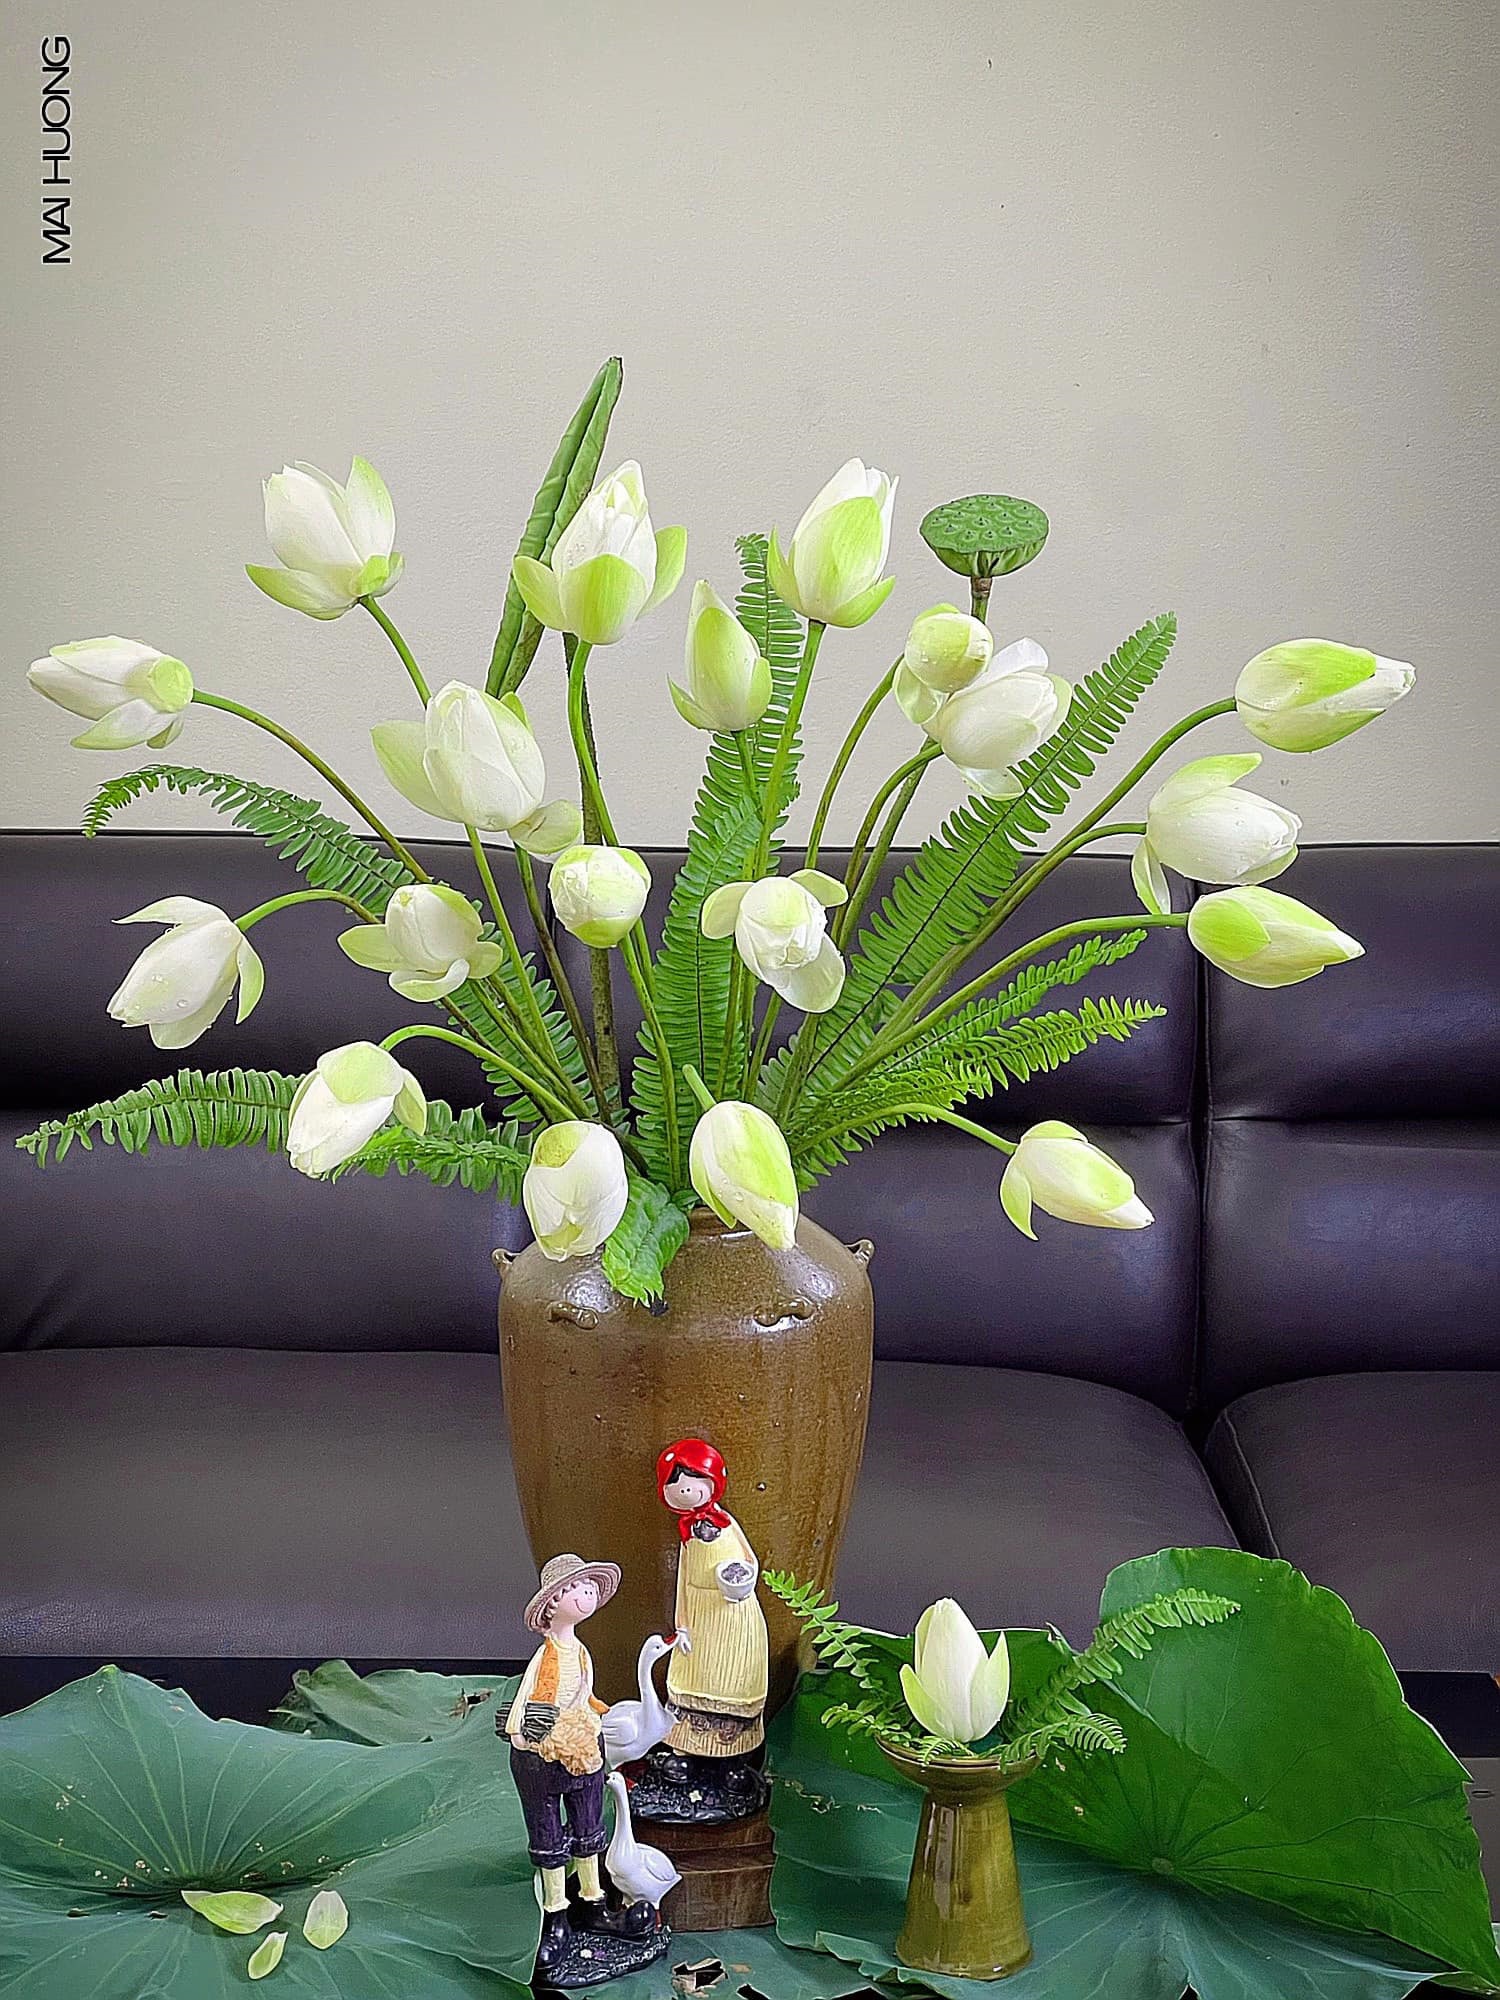 Bí quyết dưỡng hoa sen nở đúng cách căng tròn, tự nhiên giúp ngôi nhà ngập trong hương thơm - Ảnh 3